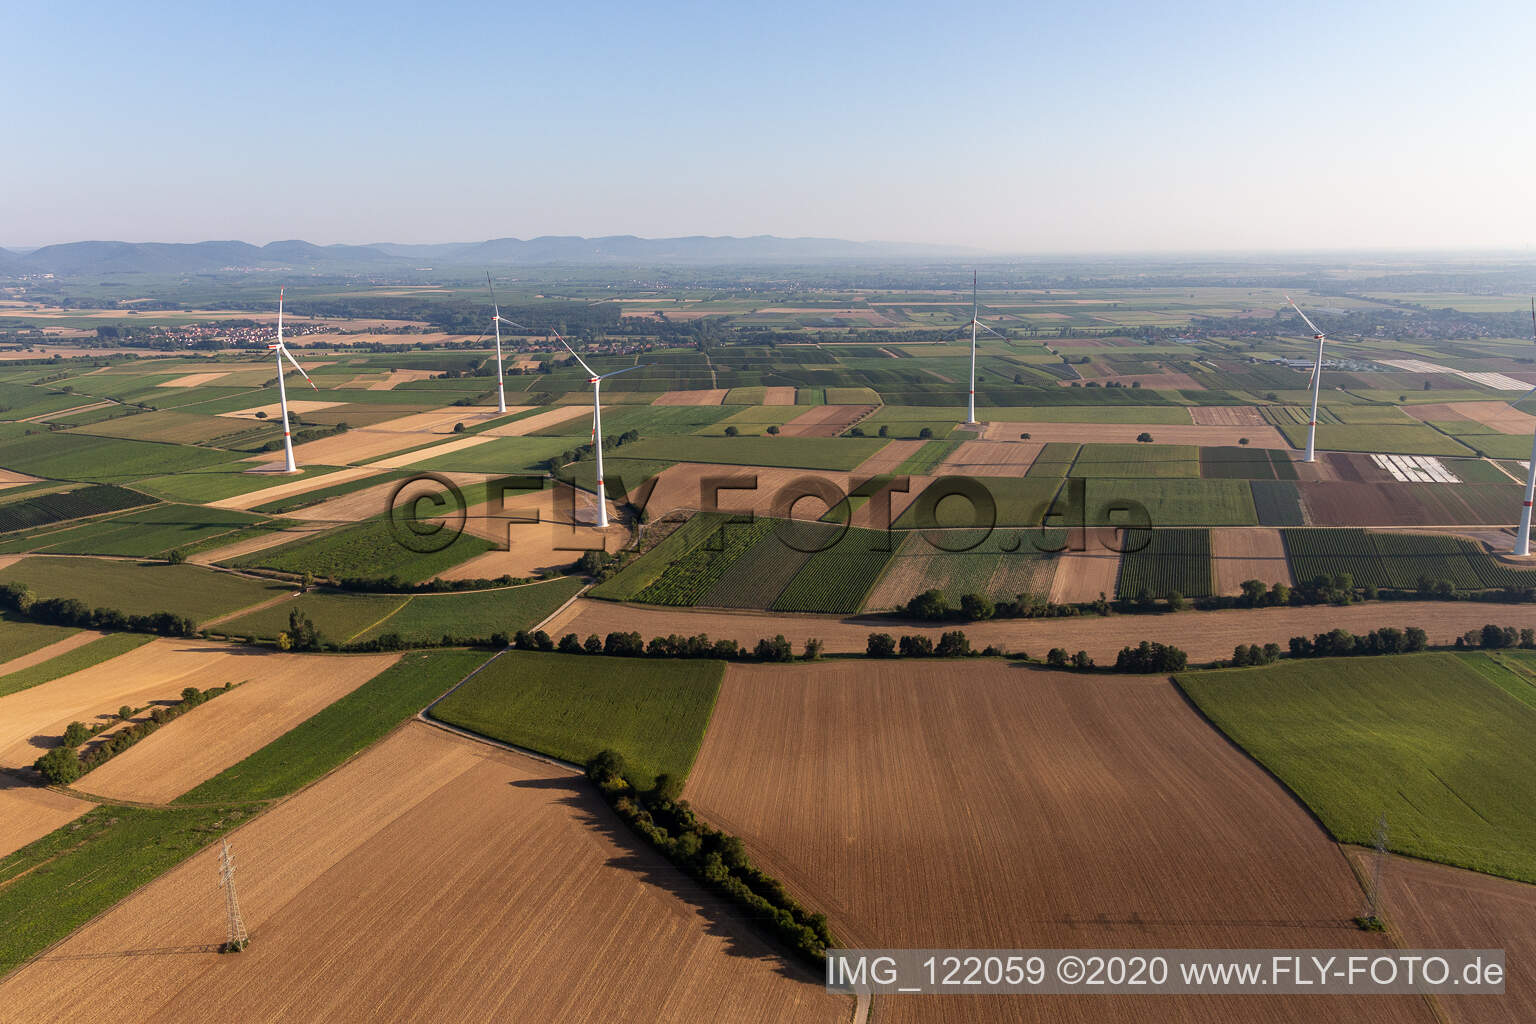 Photographie aérienne de Parc éolien à Freckenfeld dans le département Rhénanie-Palatinat, Allemagne